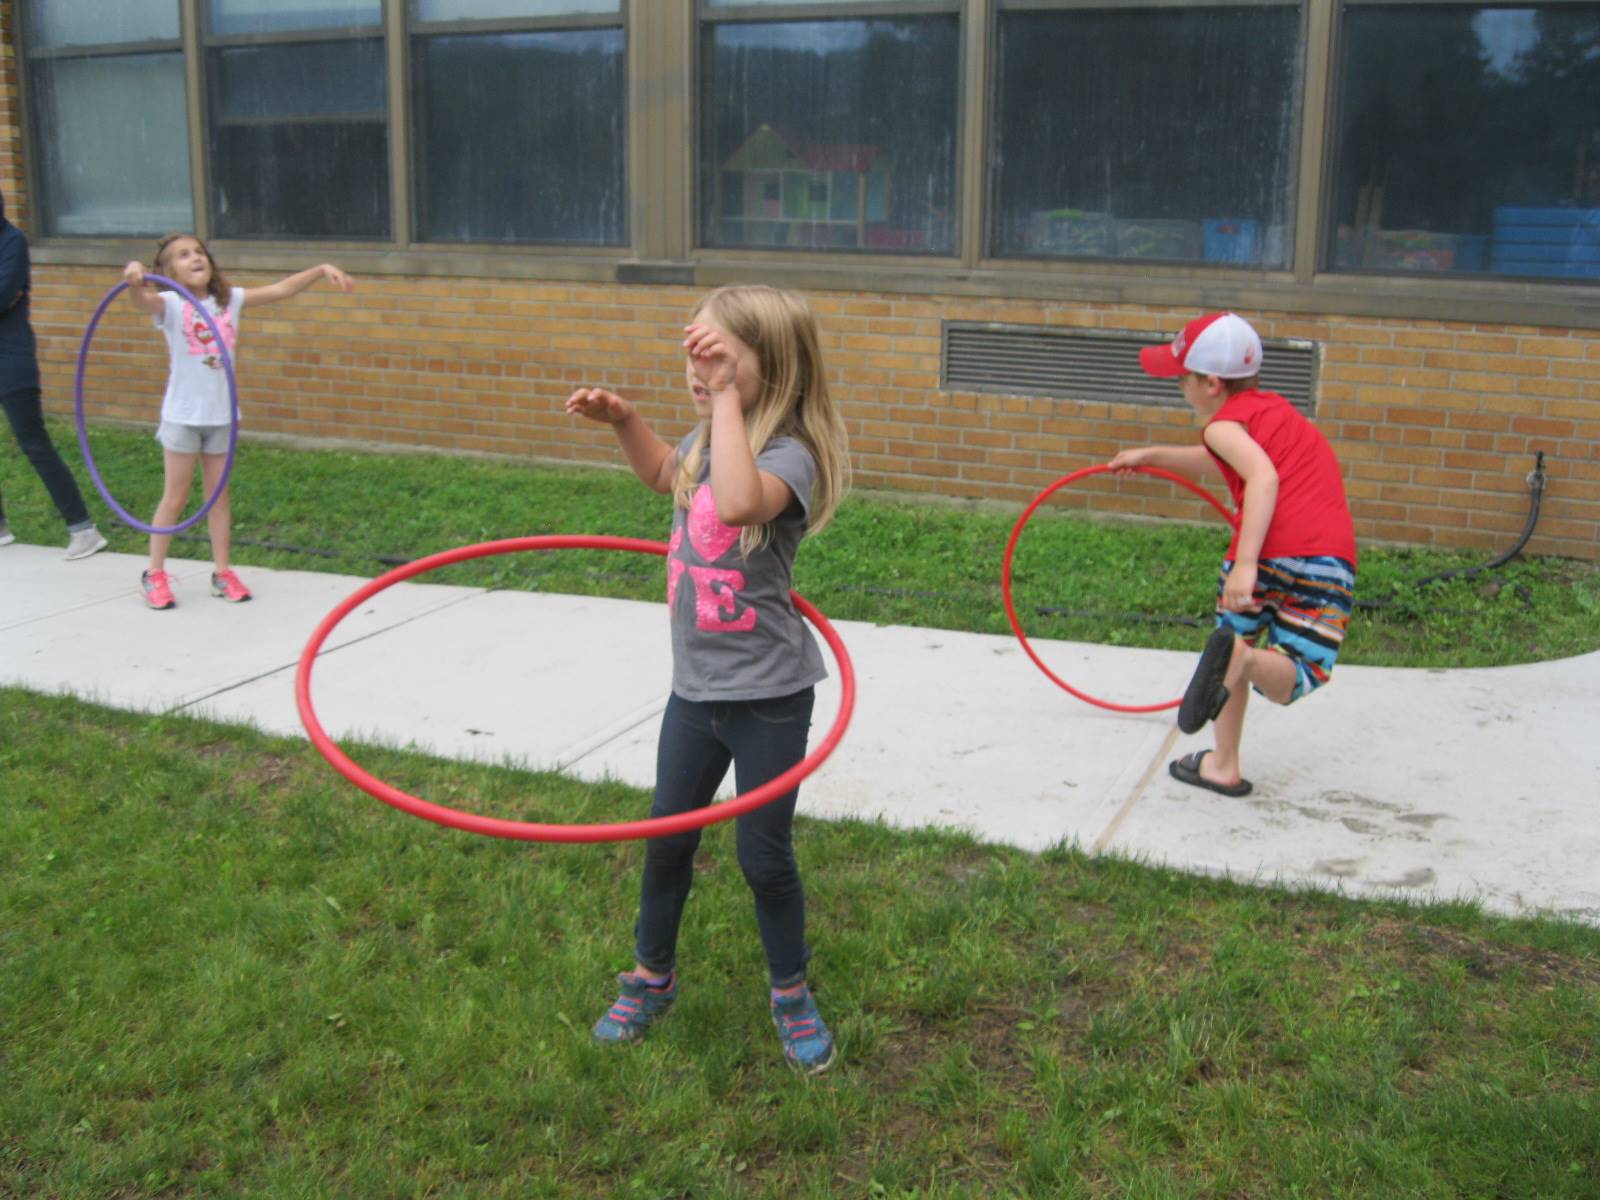 3 students hula hooping.